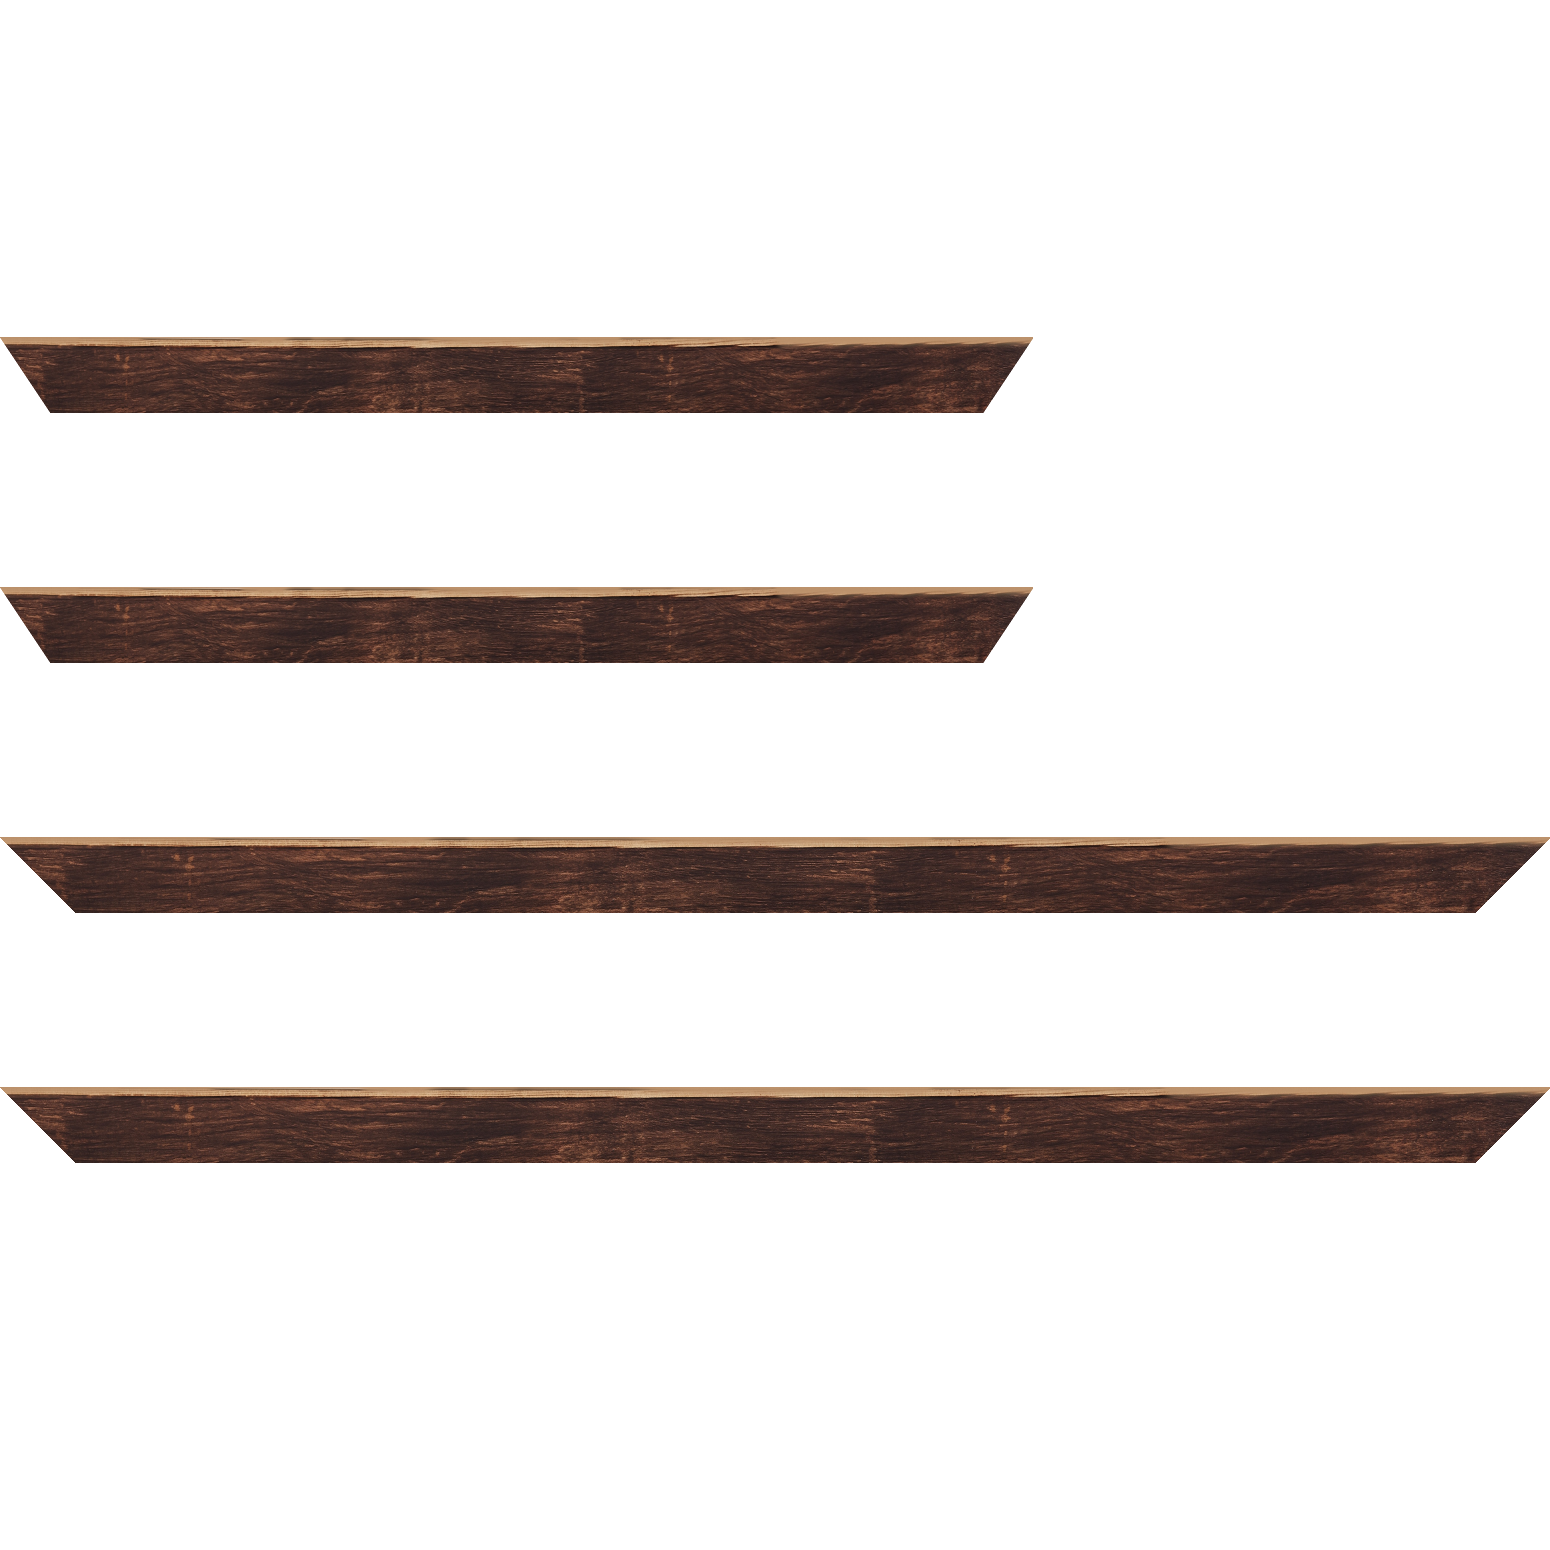 Baguette bois profil arrondi en pente plongeant largeur 2.4cm couleur marron effet ressuyé, angle du cadre extérieur filet naturel - 30x90